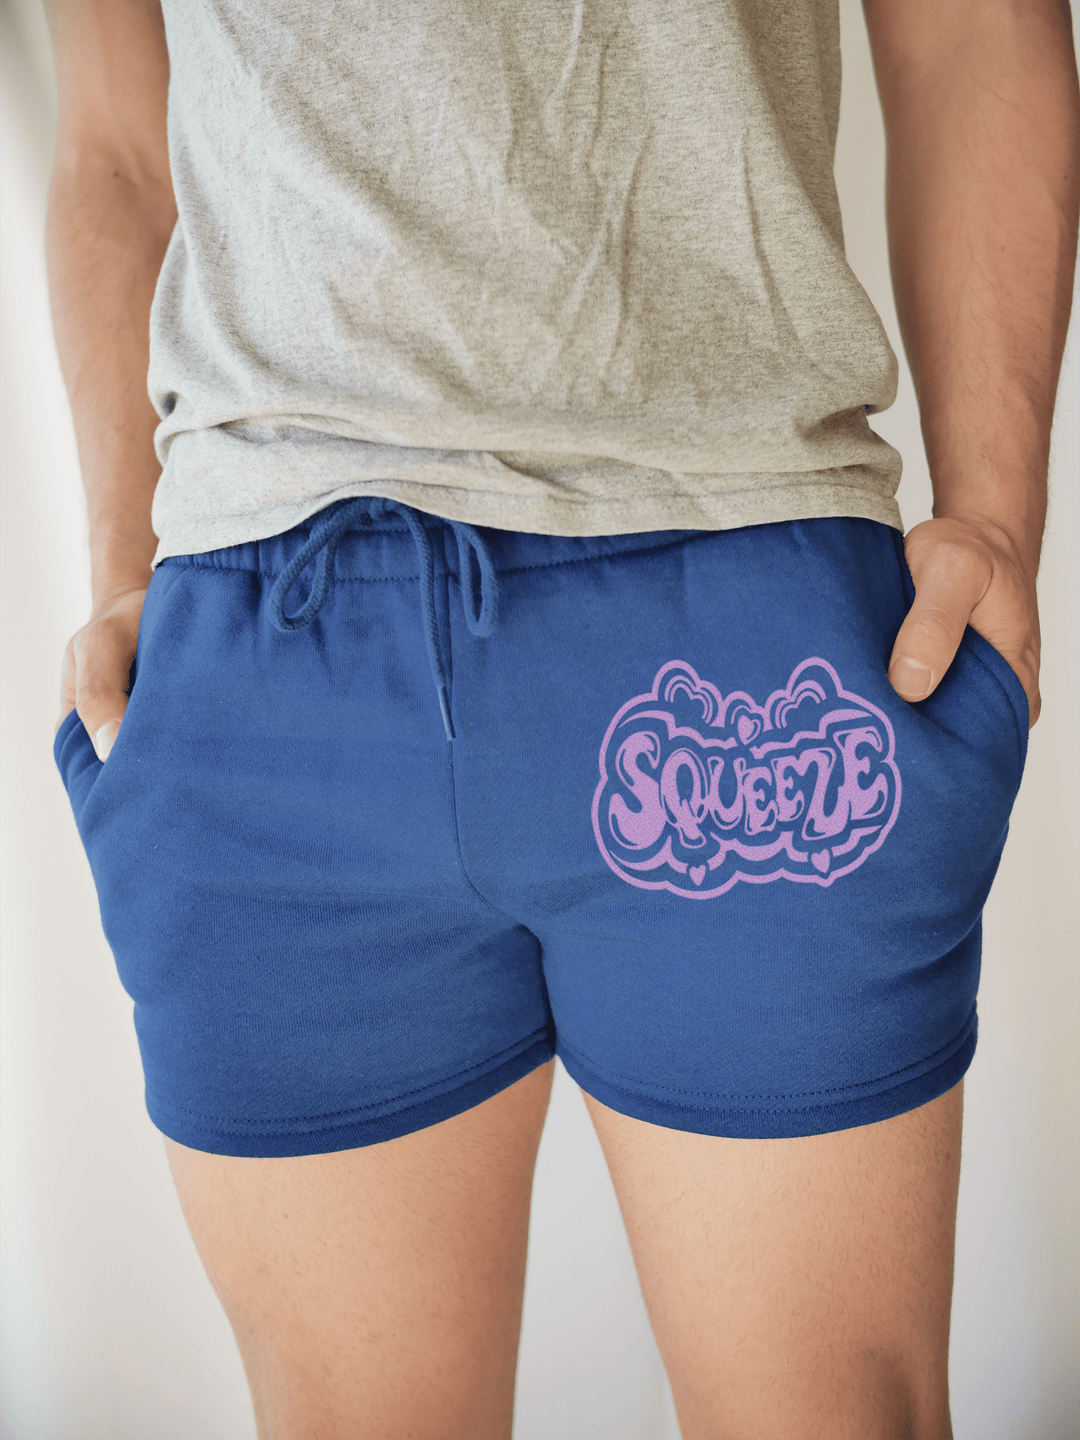 PixelThat Punderwear Shorts Royal Blue / S / Front Squeeze Men's Gym Shorts